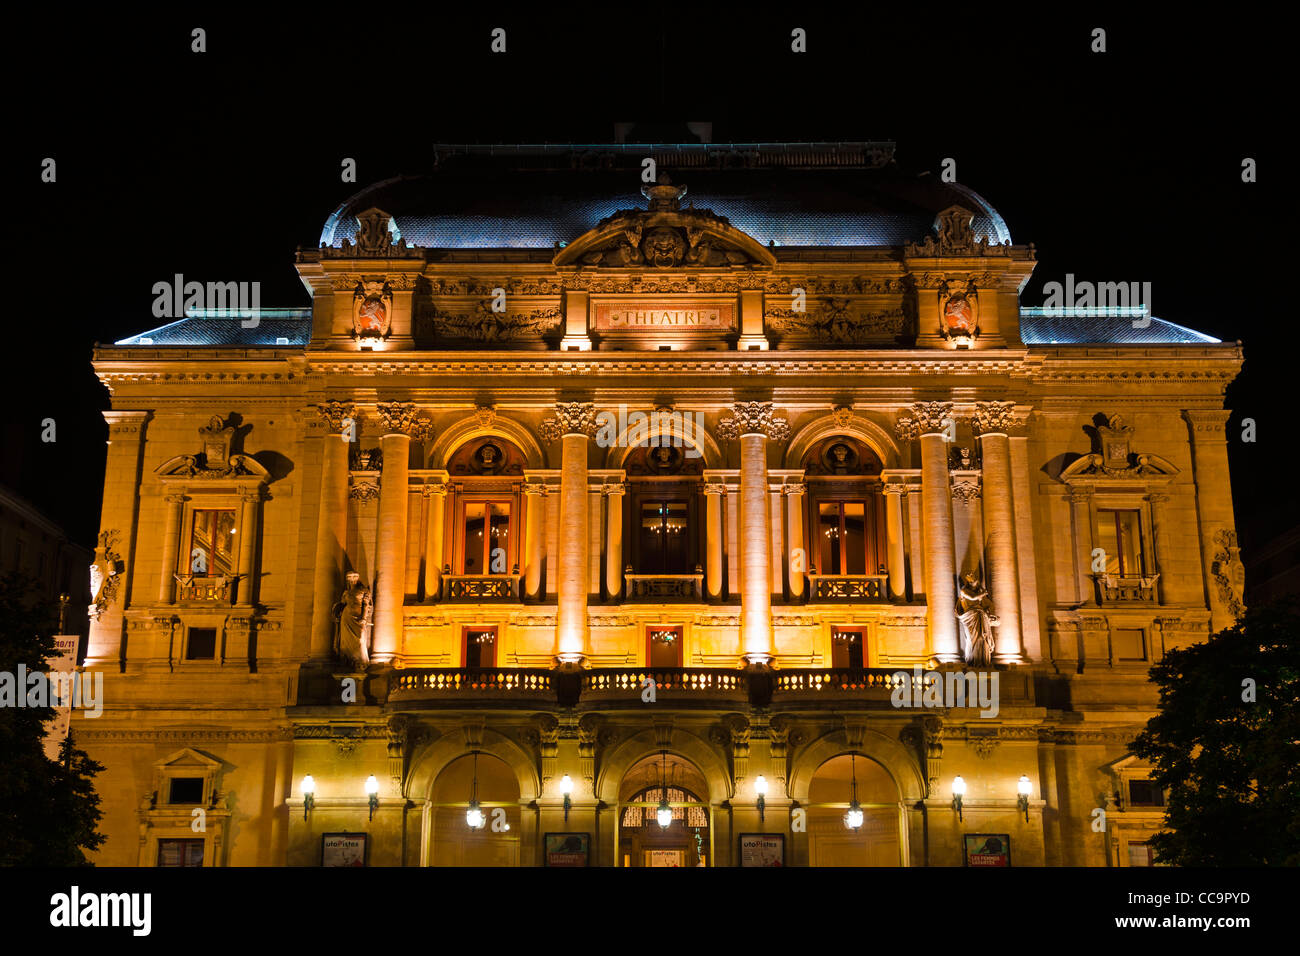 Célestins Theater in der Nacht, Lyon, Frankreich (UNESCO-Weltkulturerbe) Stockfoto